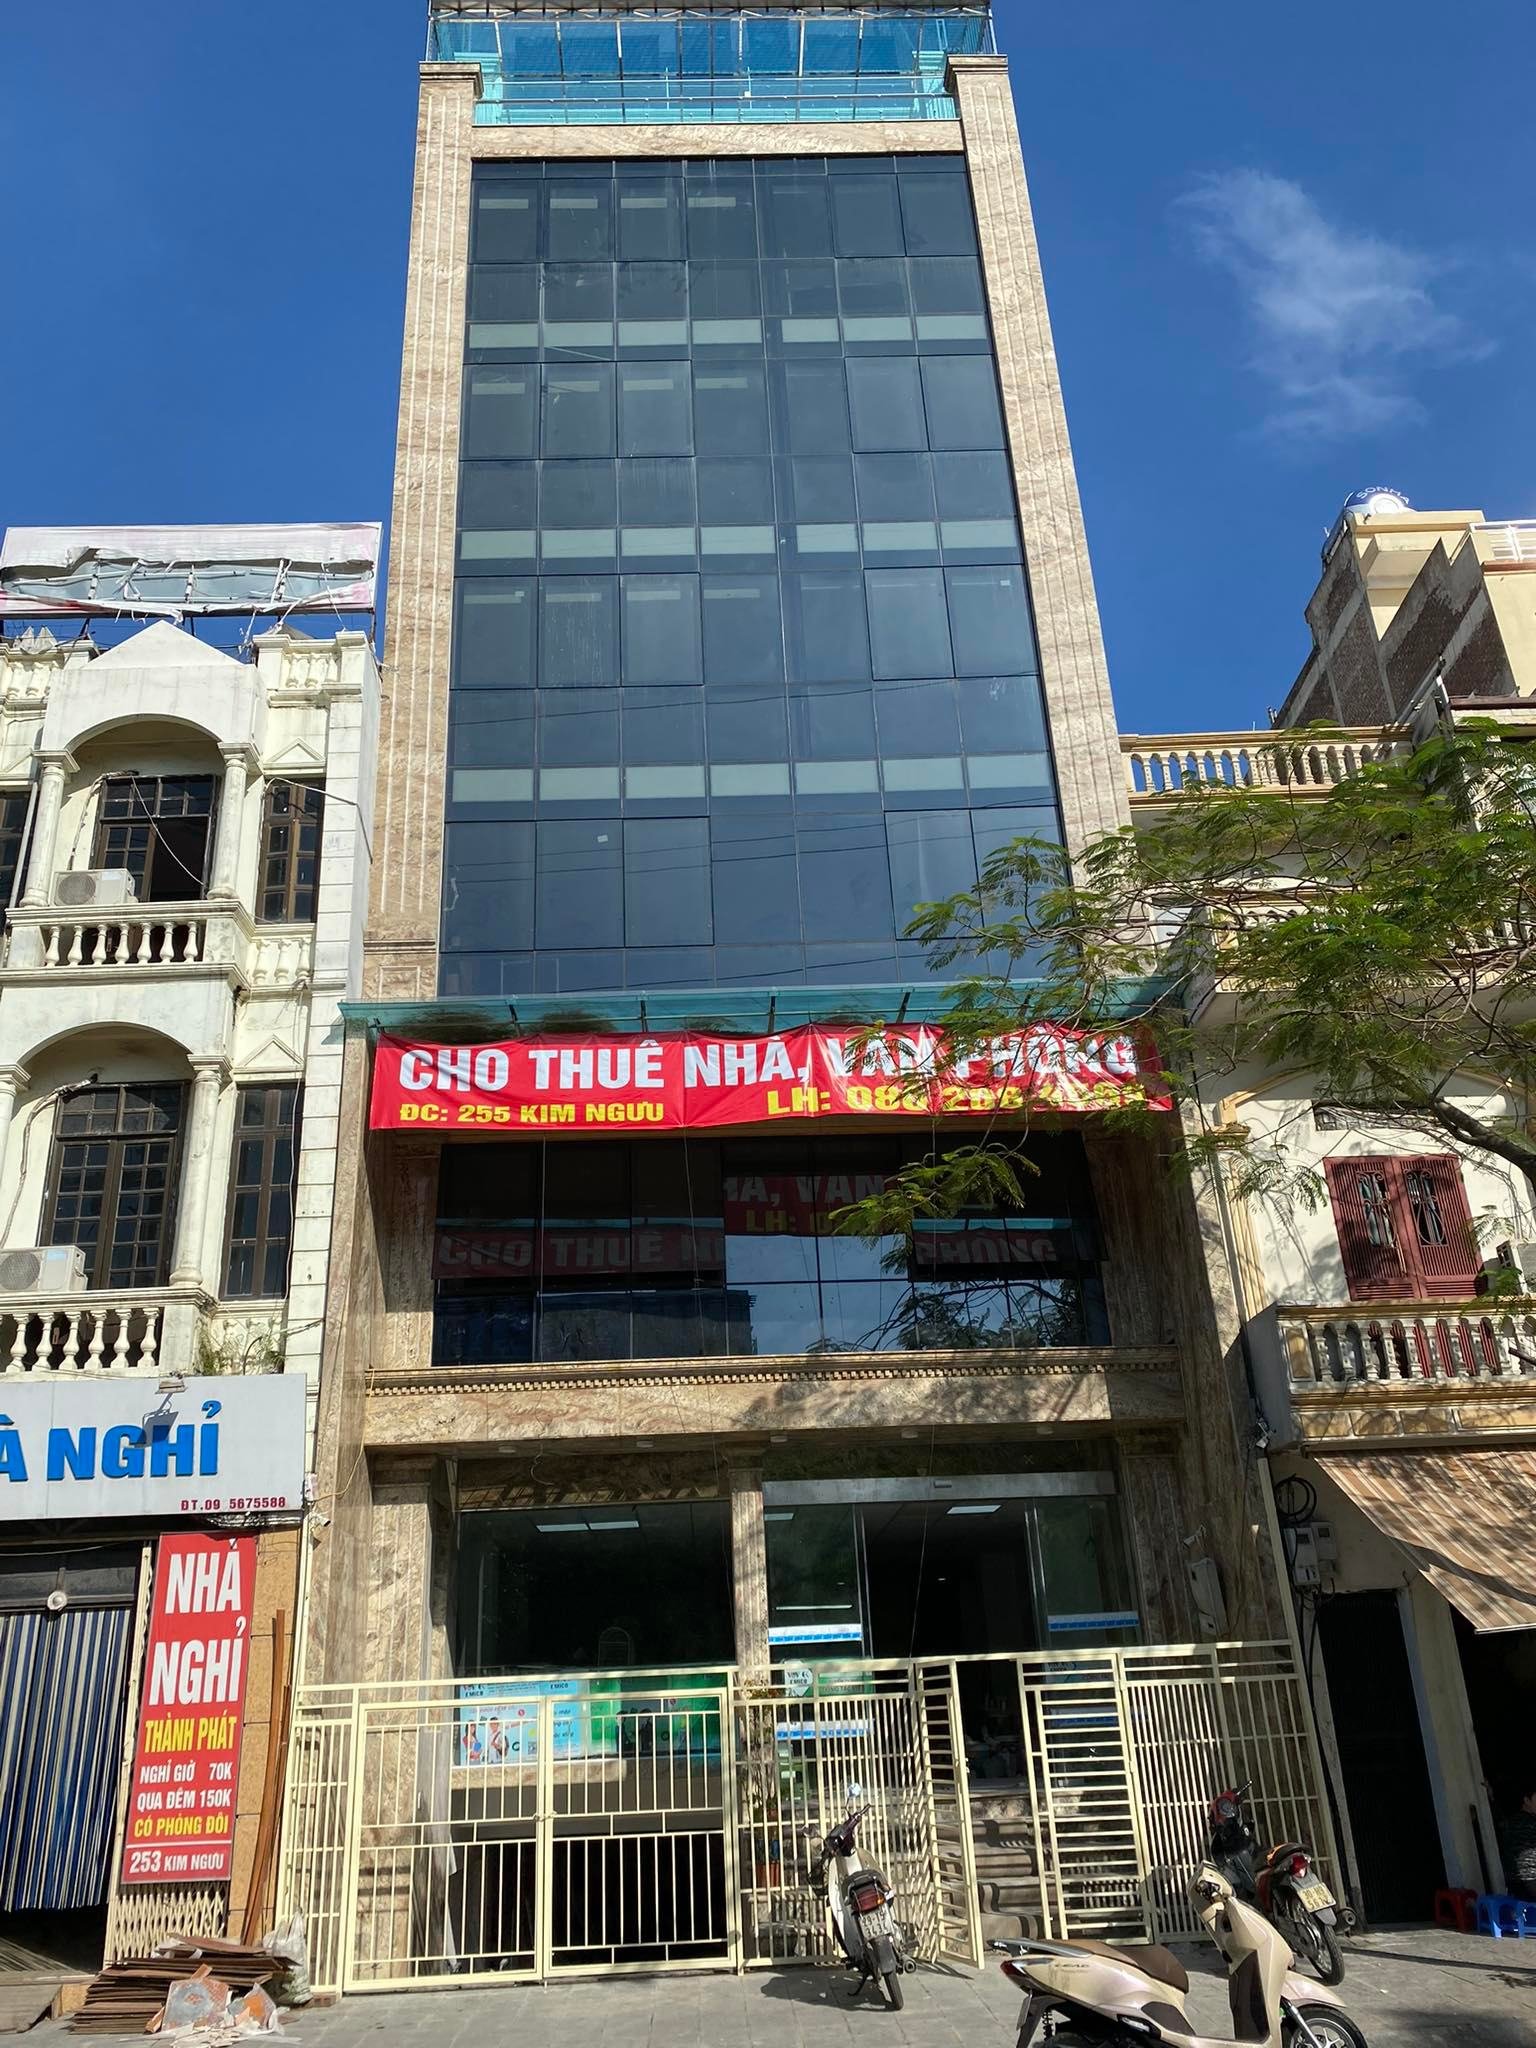 Chính chủ cho thuê tòa nhà văn phòng tại mặt phố Kim Ngưu, Hai Bà Trưng DT150m2x5 tầng